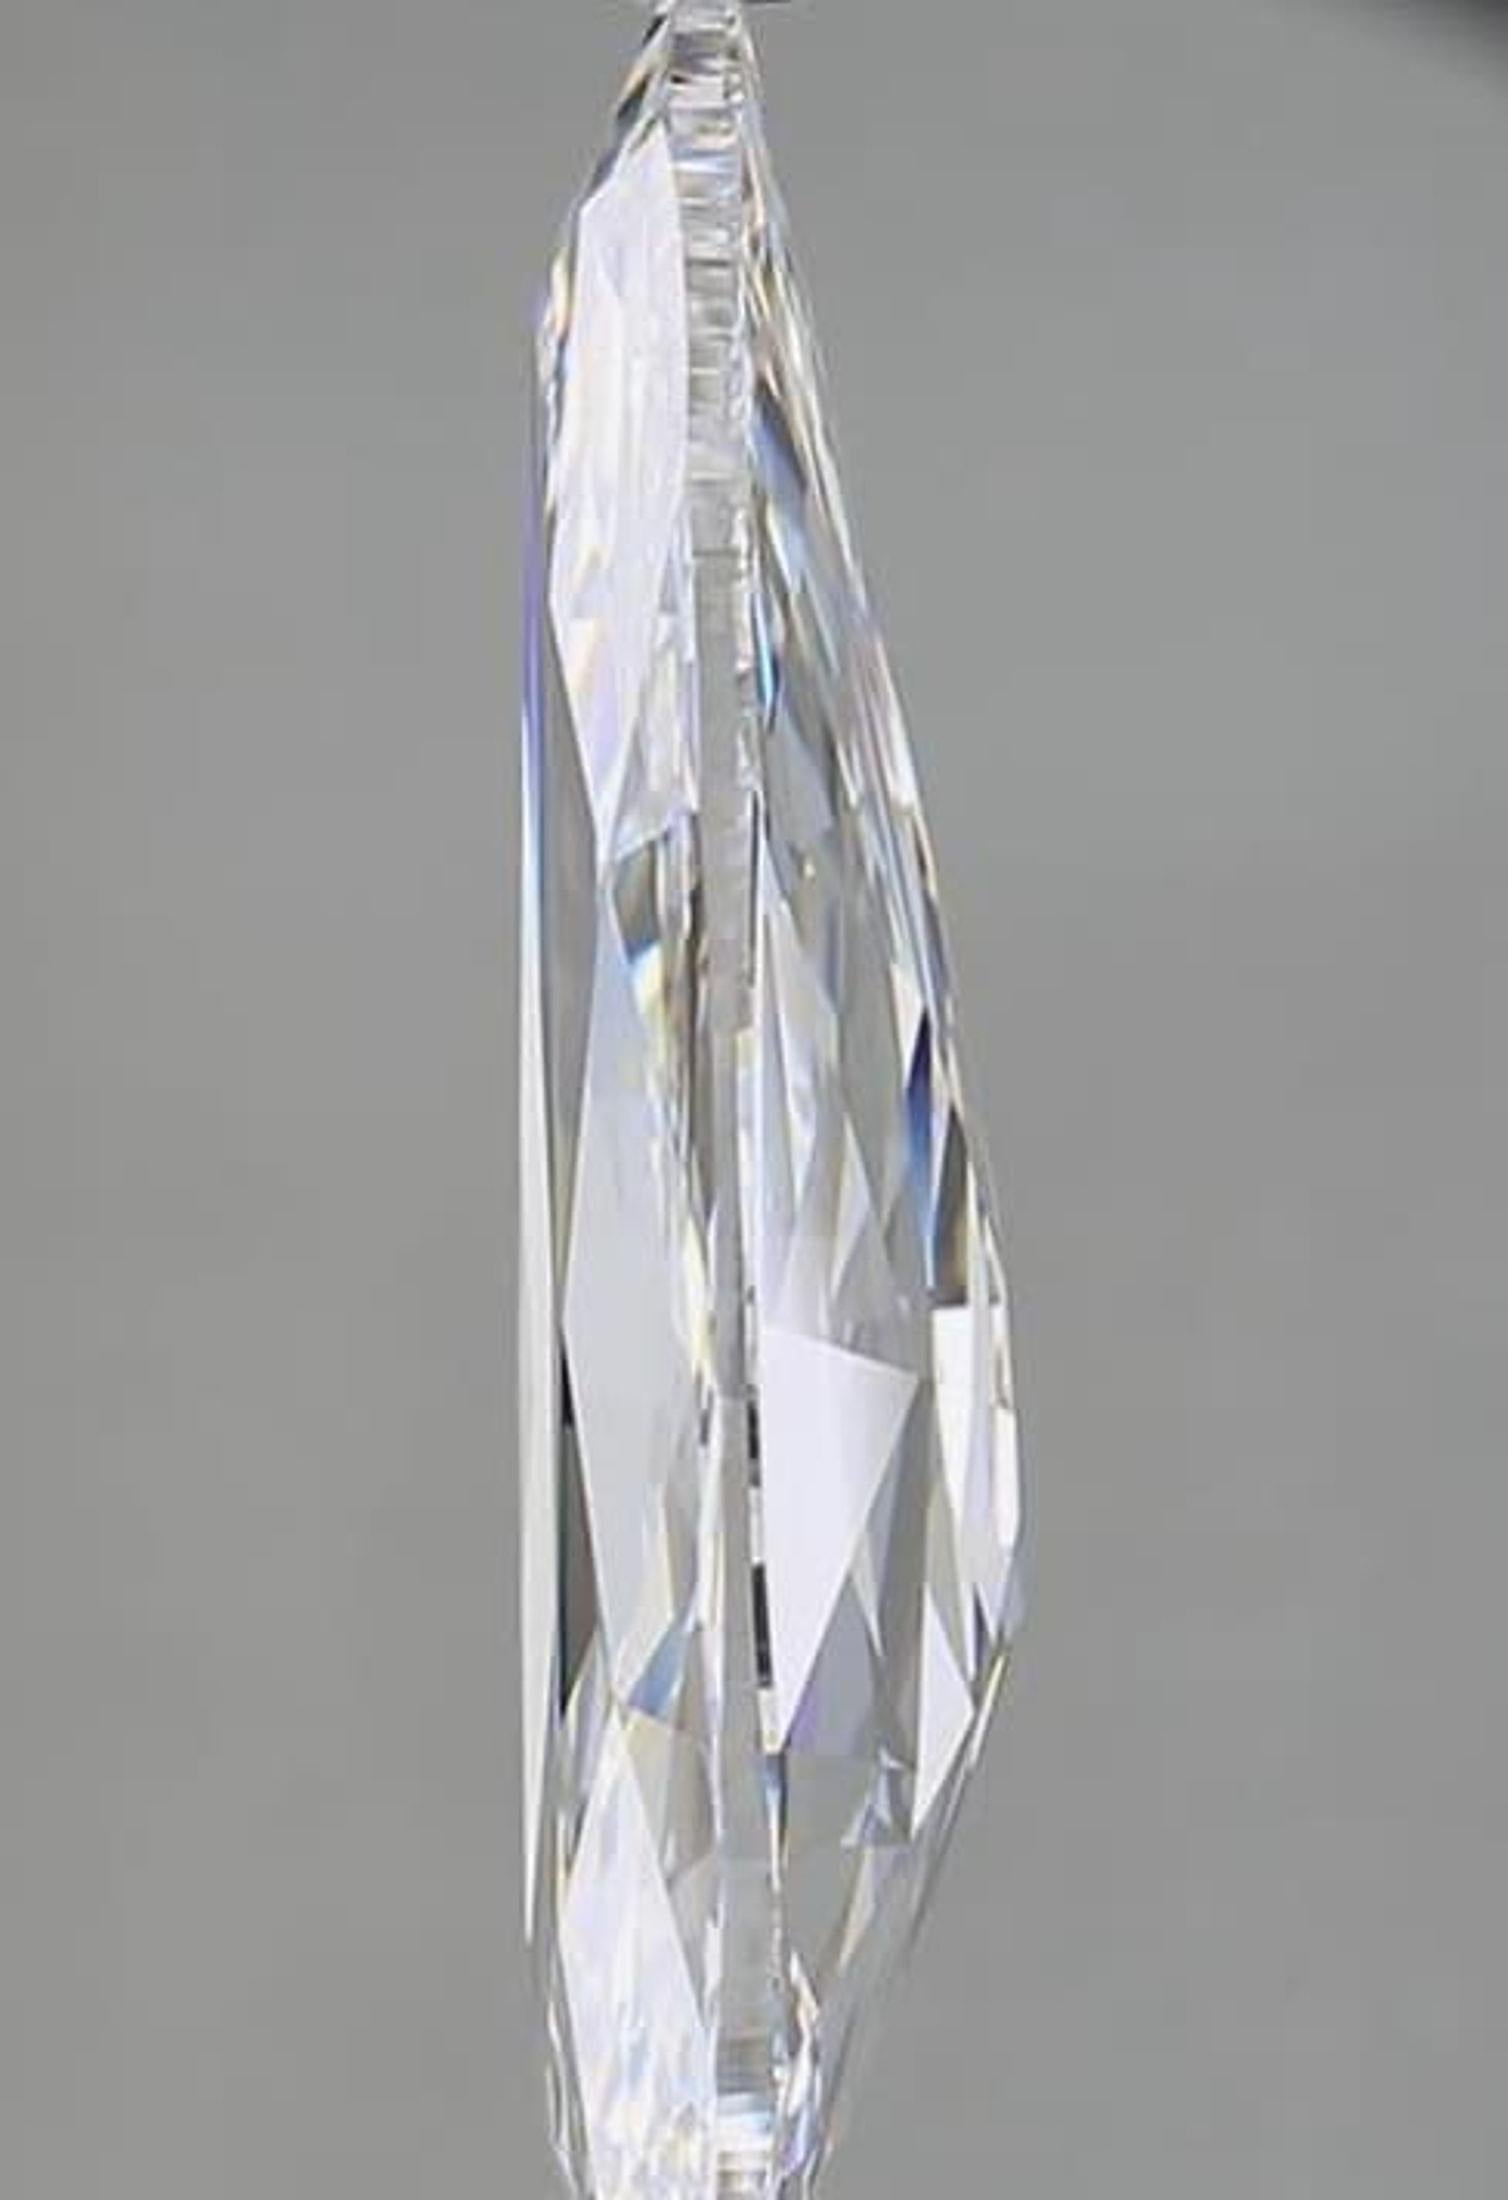 Diamant naturel classé par la GIA (avec certificat de type II A).
Meilleure couleur et meilleure clarté.

Forme : Forme de poire ancienne
Poids : 8,88 kg
Couleur : D
Clarté : IF
Polonais : Excellent
Symétrie : Très bonne
Fluorescence :